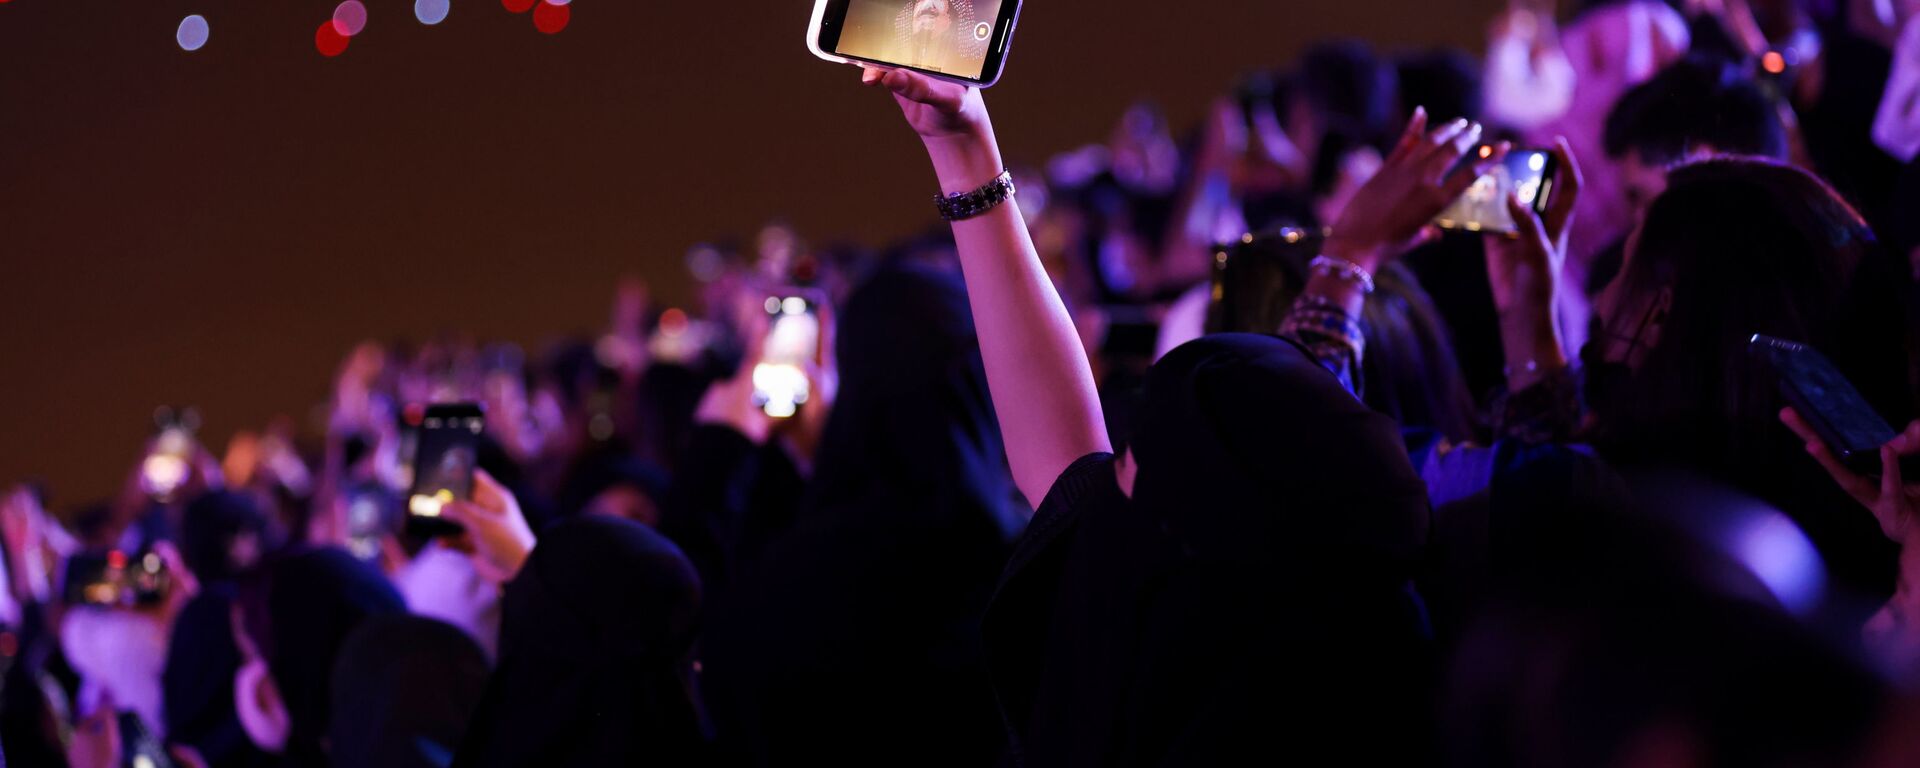 امرأة ضمن الجمهور تلتقط صورة في حفل افتتاح مهرجان موسم الرياض في الرياض، المملكة العربية السعودية، 20 أكتوبر 2021. - سبوتنيك عربي, 1920, 20.11.2021